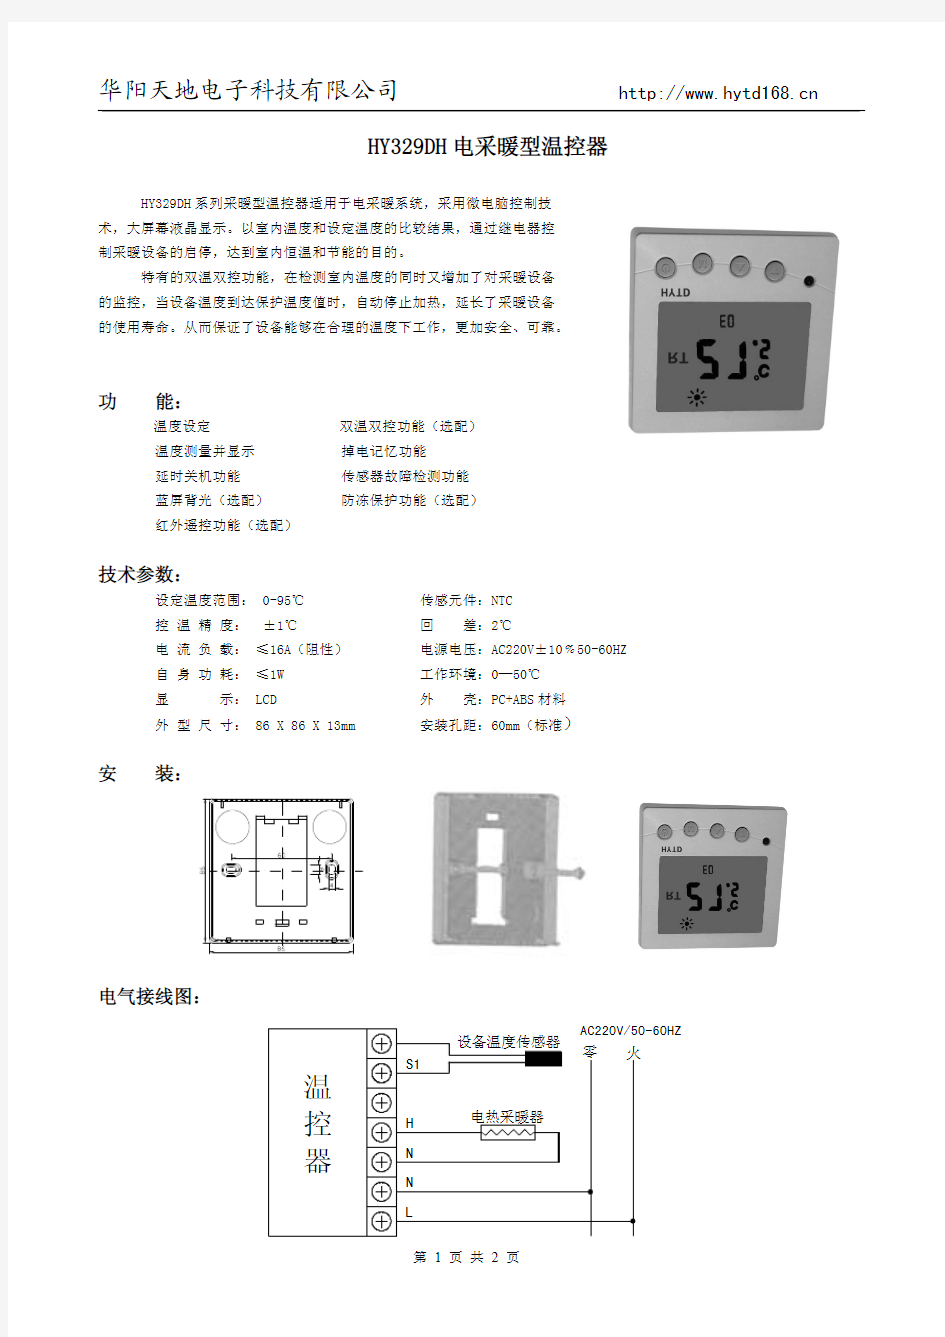 液晶温控器中文说明